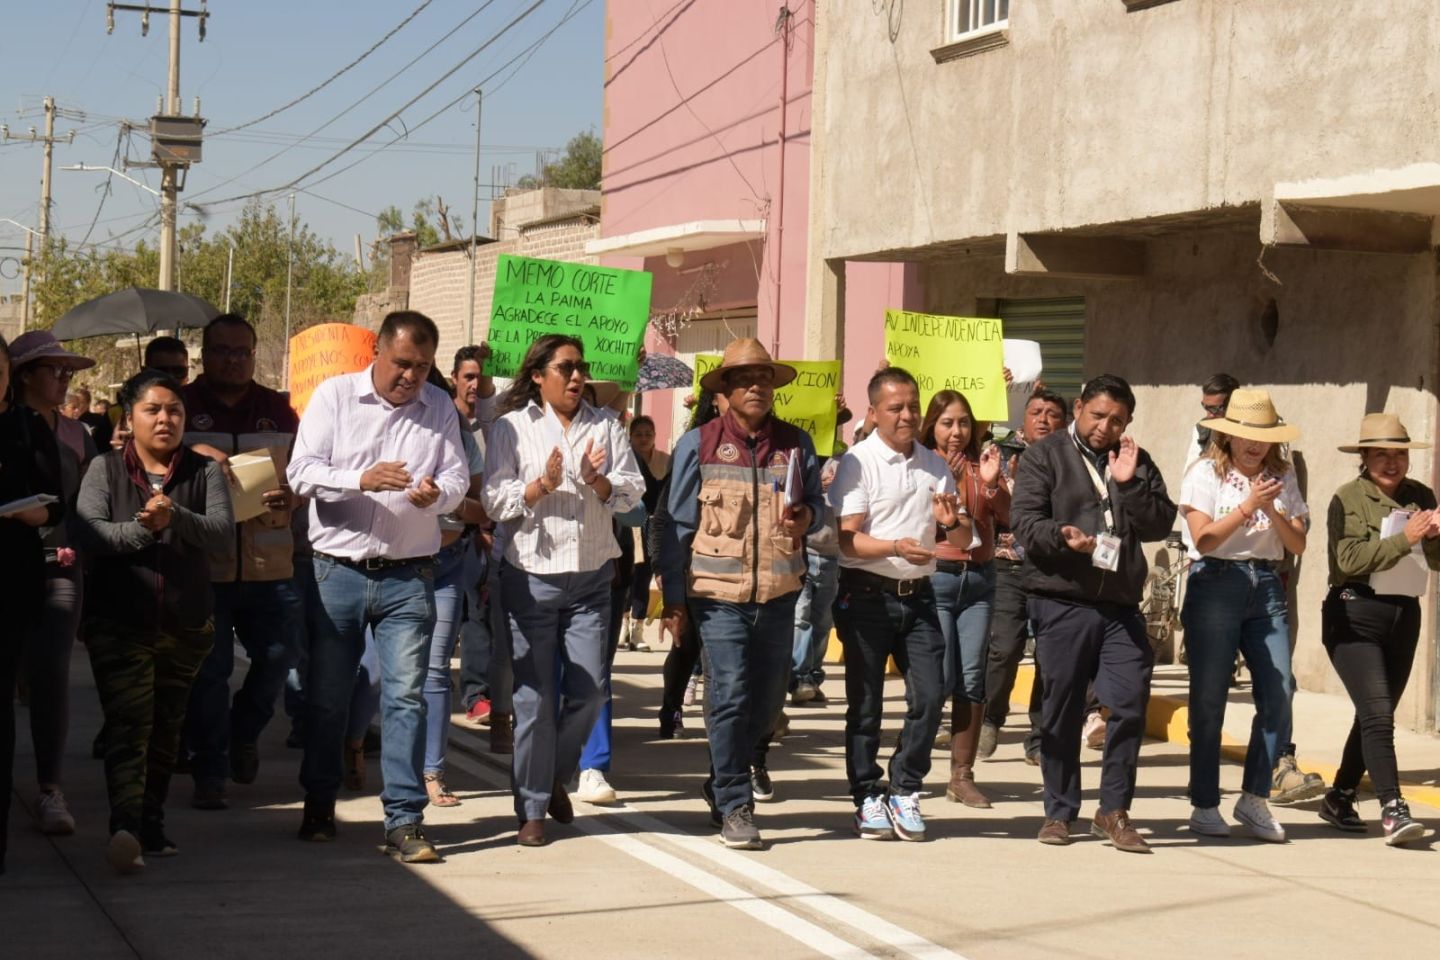 Al Entregar Calles Repavimentadas, la Presidenta de
Chimalhuacán Anuncia Inauguración de Clínica y Otras Obras
